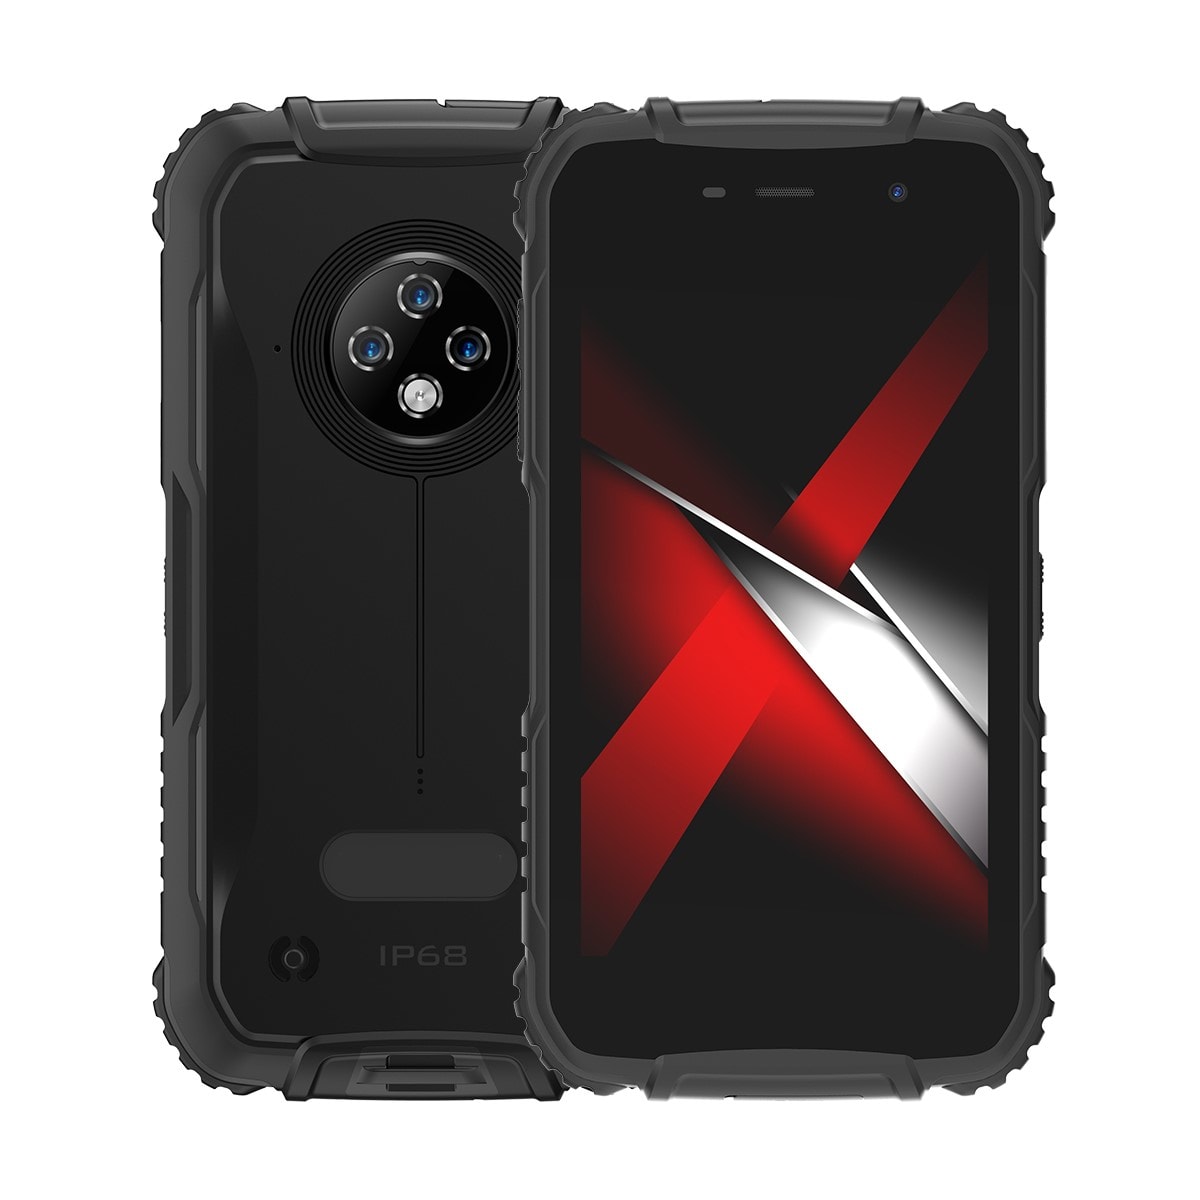 Smartphone antichoc android 10 téléphone incassable 4g dual sim ip68 noir  YONIS